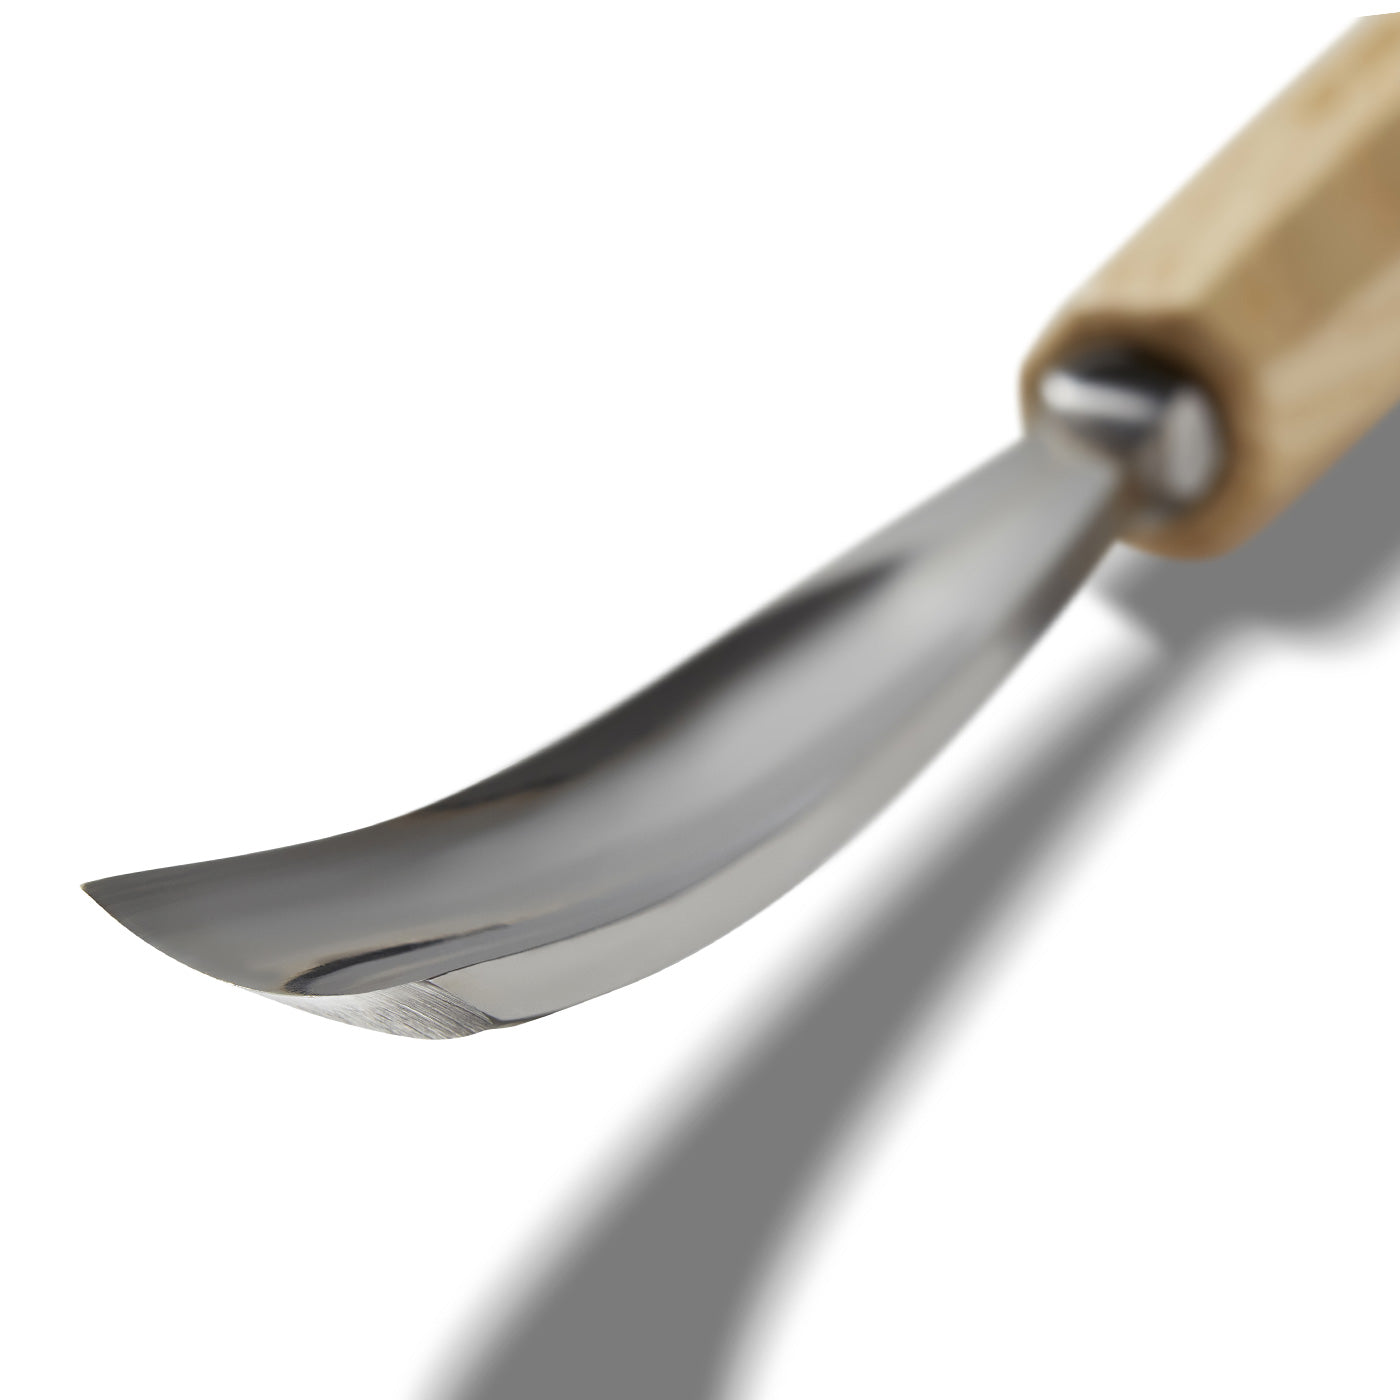 Pfeil - Gouge Long bent tools n.7L - carving tools